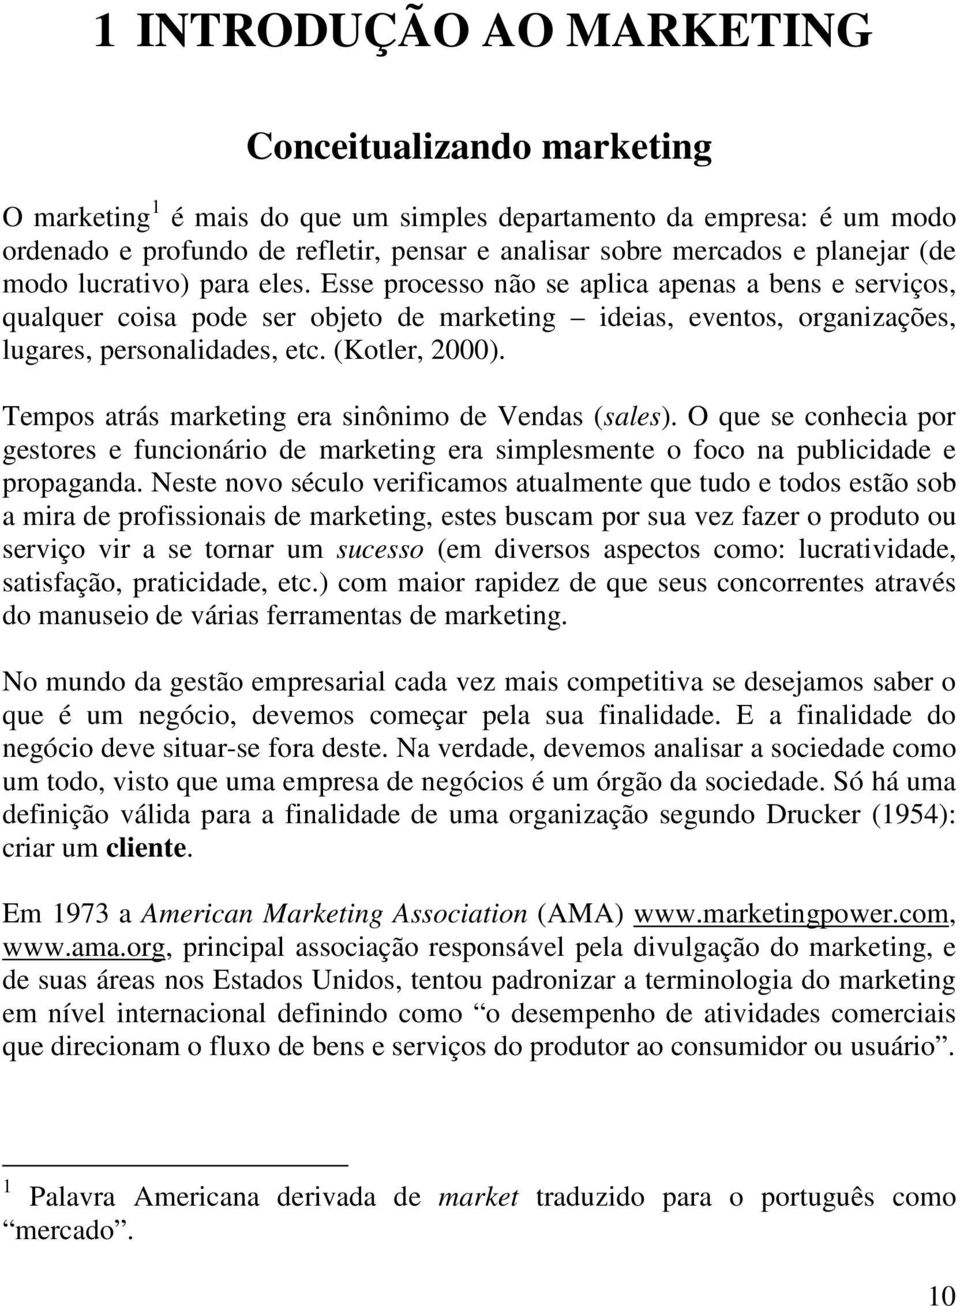 (Kotler, 2000). Tempos atrás marketing era sinônimo de Vendas (sales). O que se conhecia por gestores e funcionário de marketing era simplesmente o foco na publicidade e propaganda.